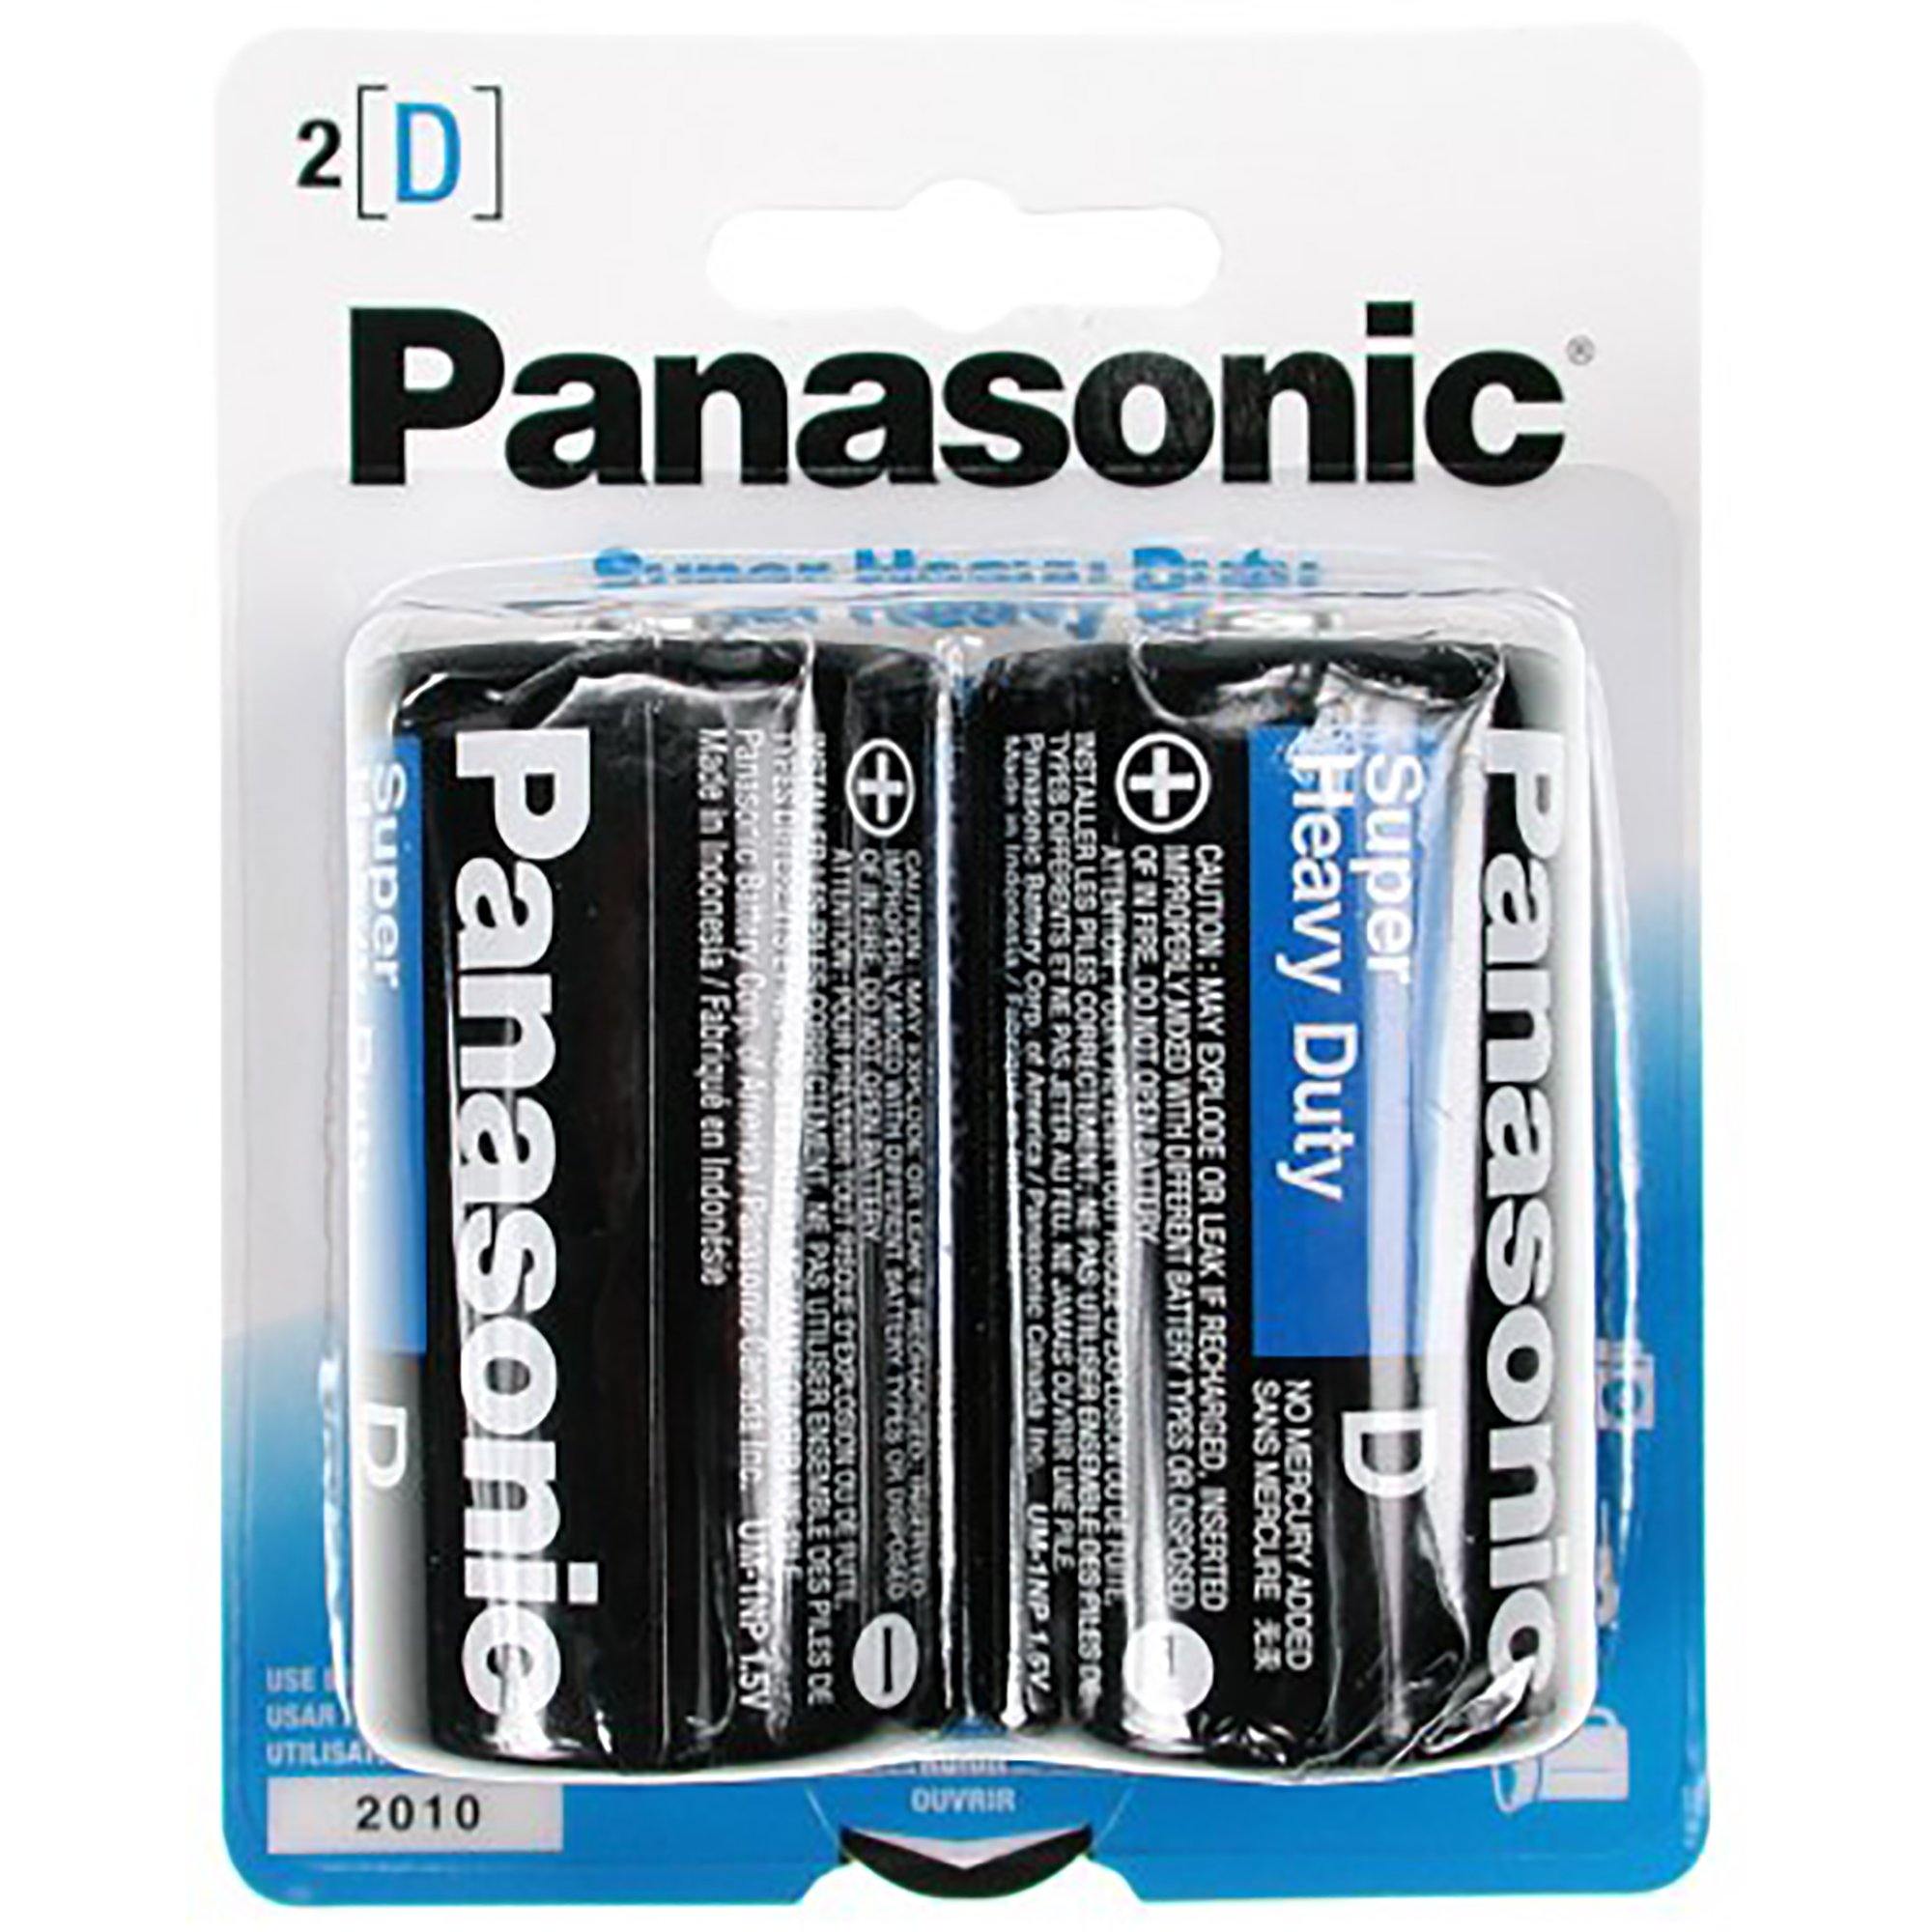 Panasonic Batteries D (2) - Dollar Max Dépôt